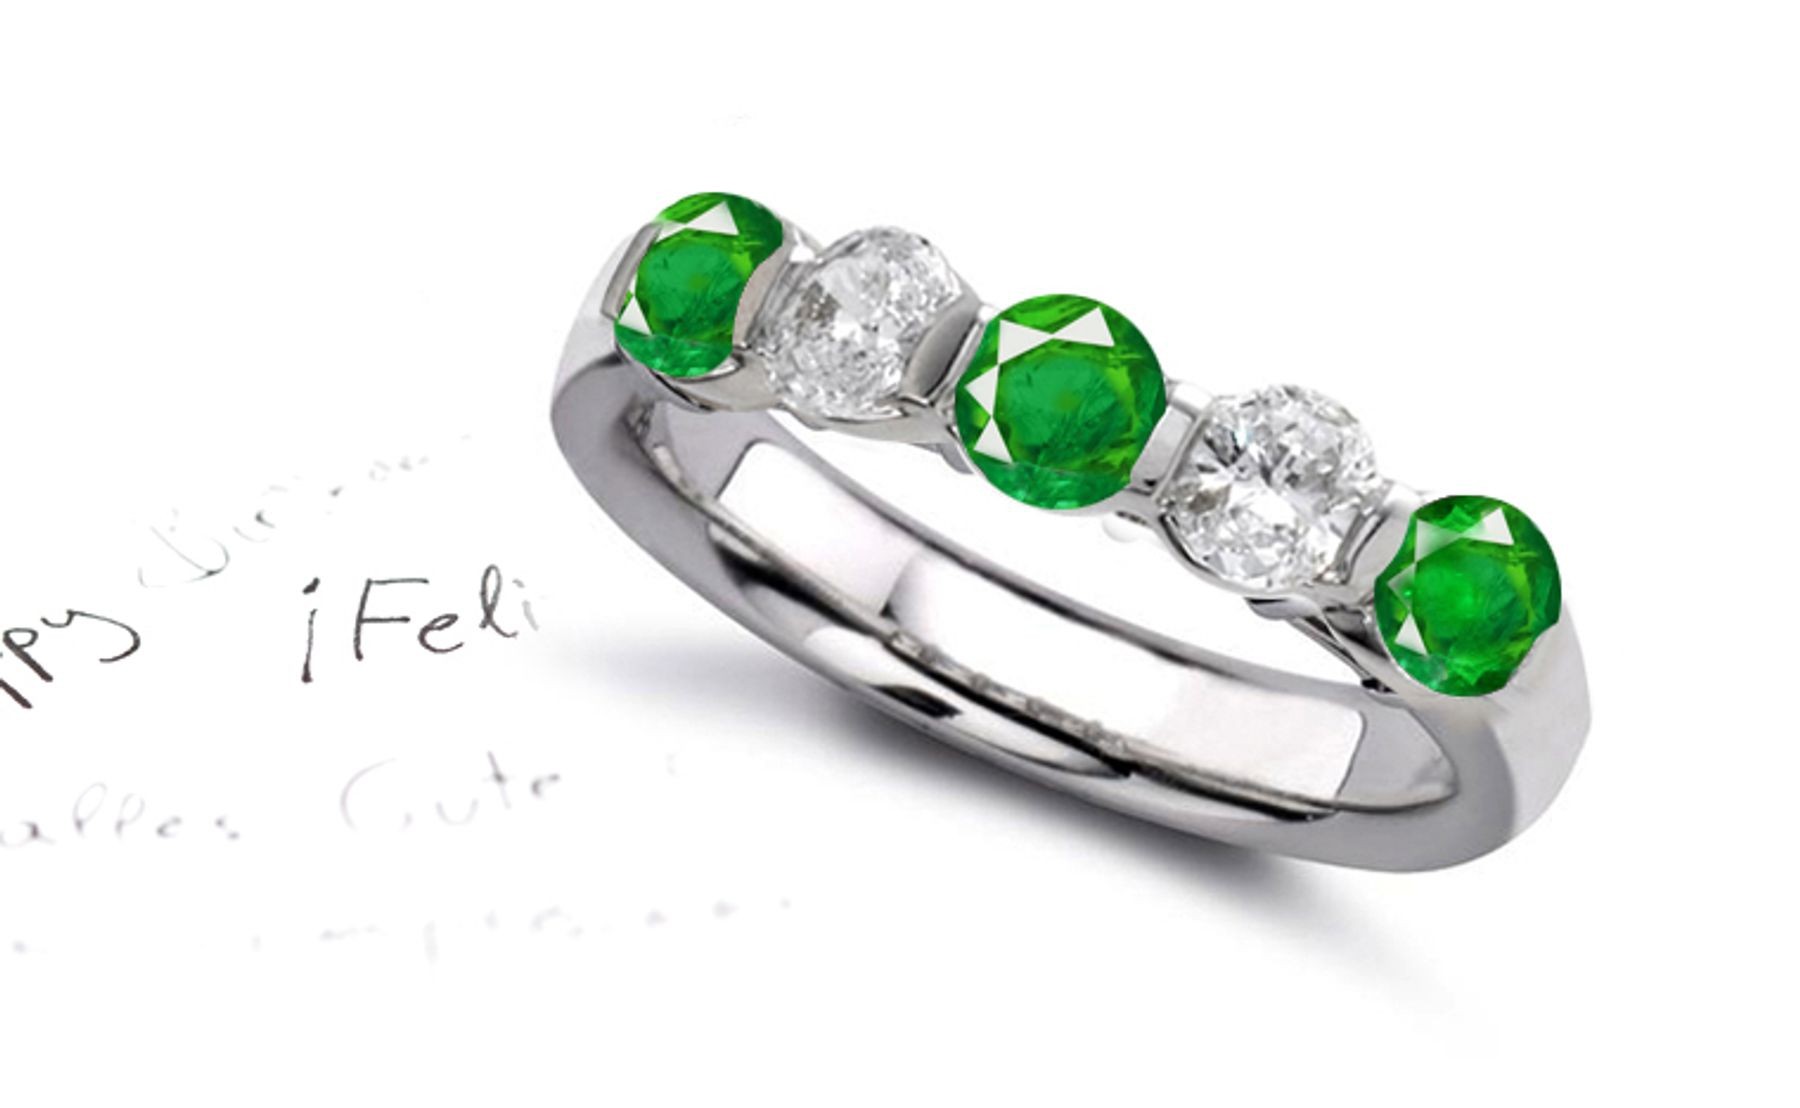 Innovative & Unique: Fascinating 5 Stone Emerald & Diamond Ring